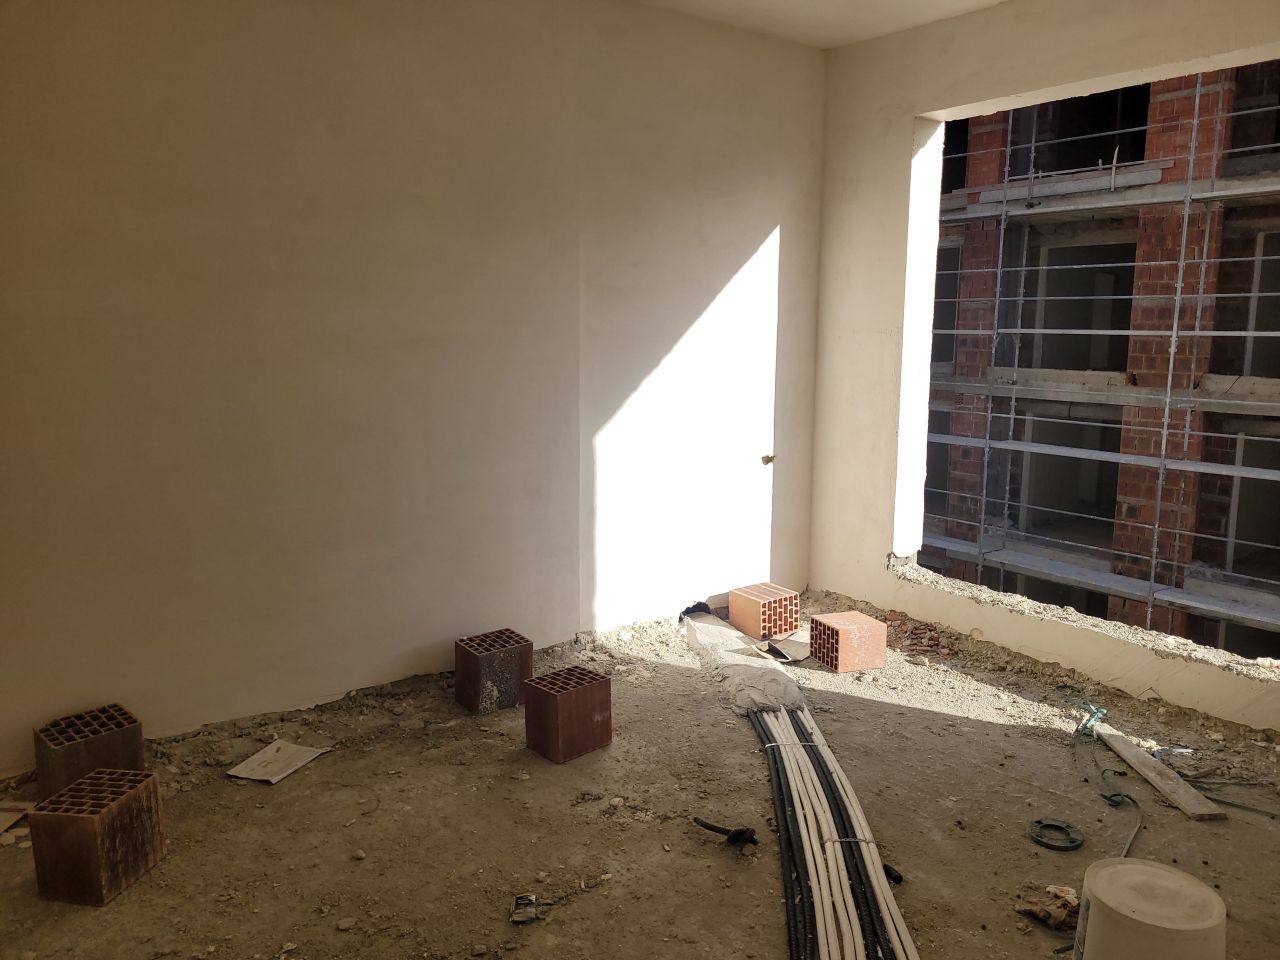 Wohnung Zum Verkauf In Golem Durres, Albanien, In Einem Neuen Gebäude Im Bau, Nahe Am Strand